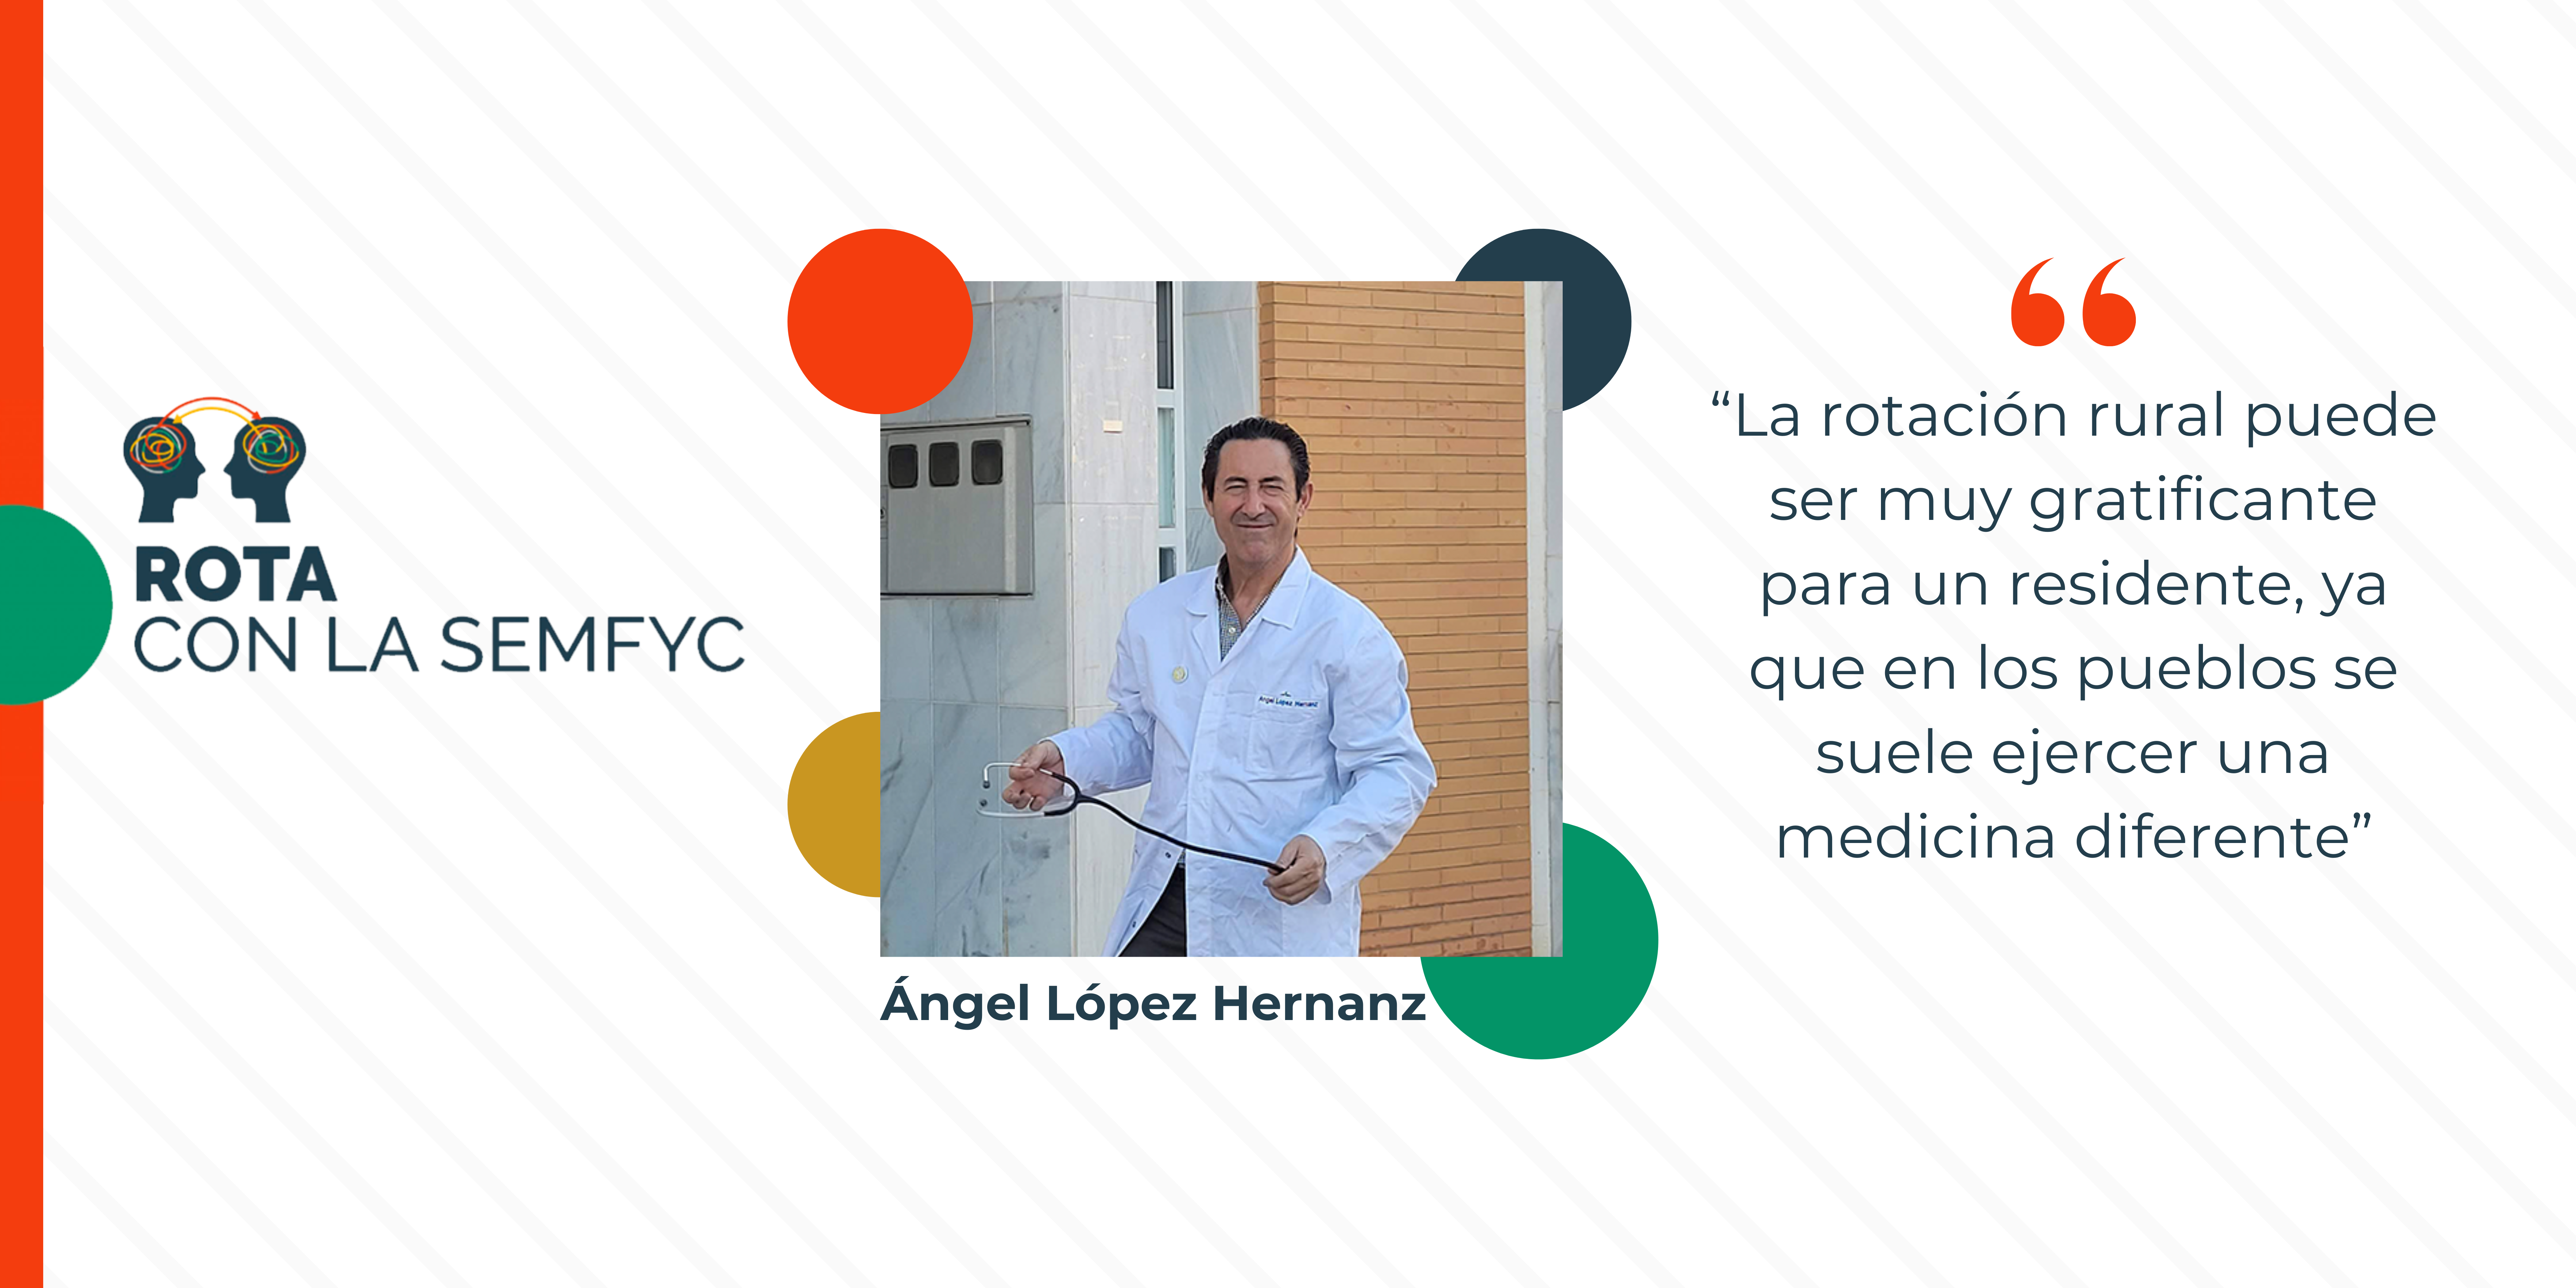 Ángel López Hernanz: “La rotación rural puede ser muy gratificante para un residente, ya que en los pueblos se suele ejercer una medicina diferente”